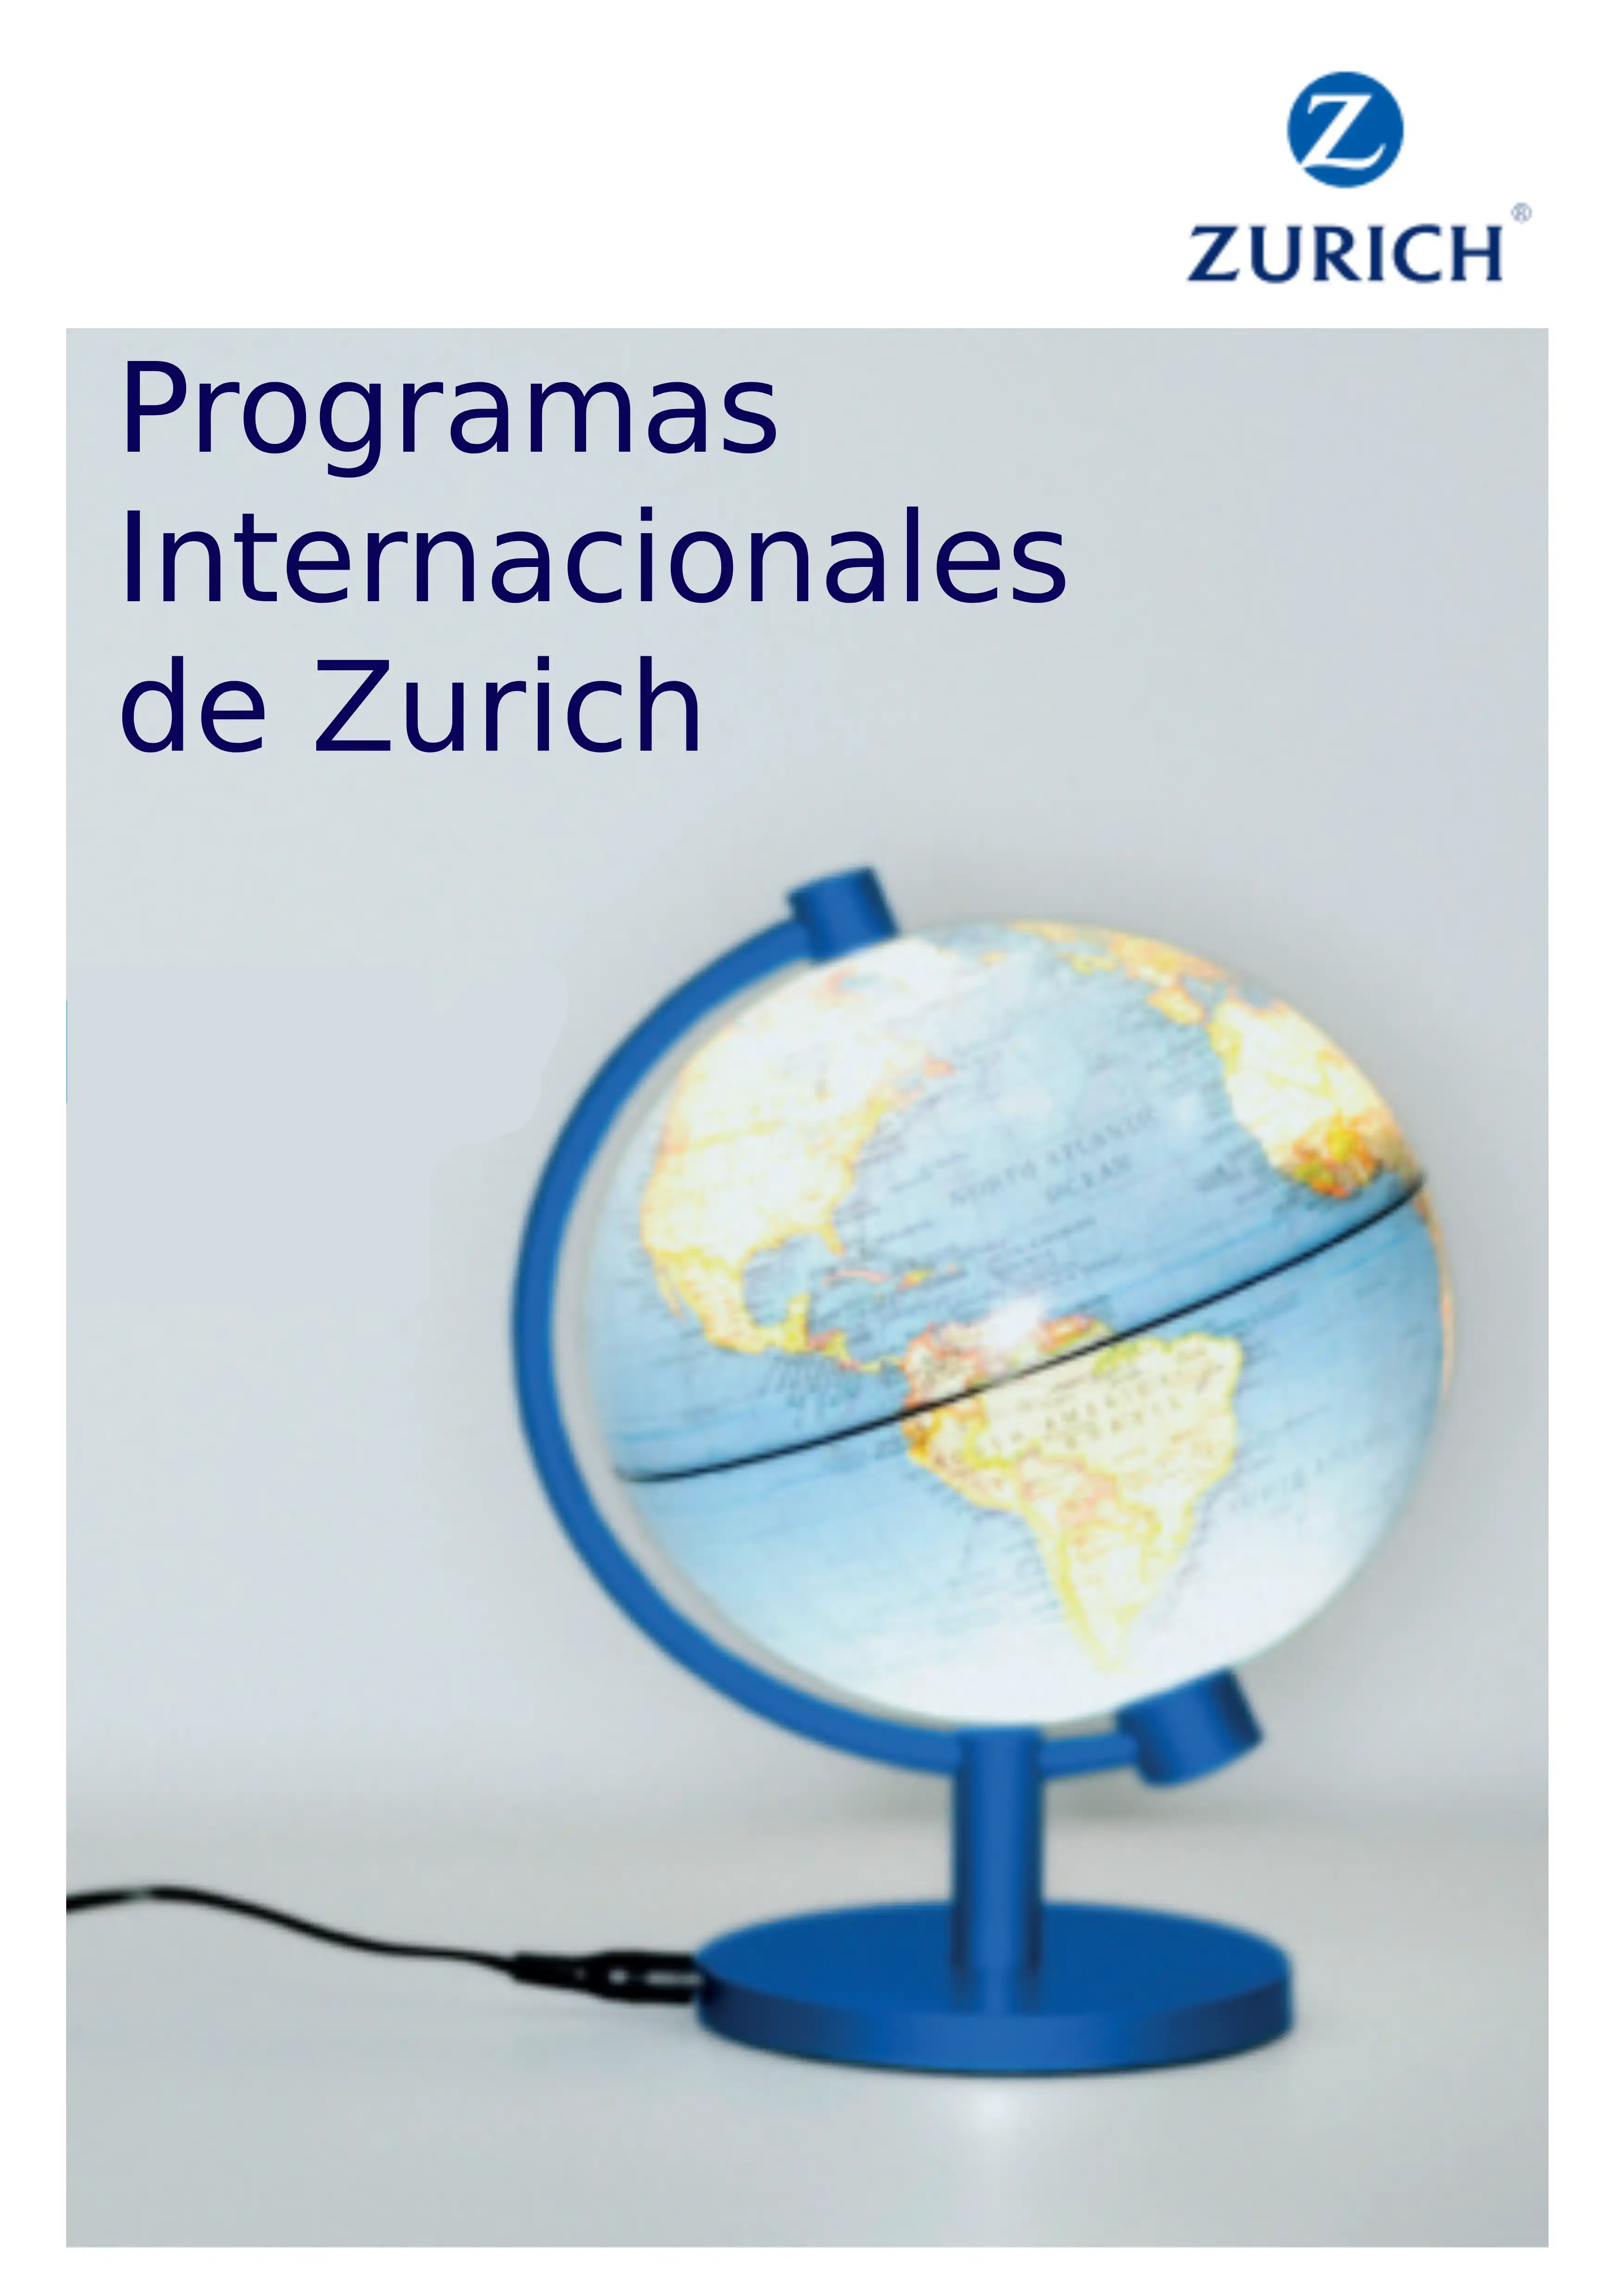 Programas Internacionales de Zurich